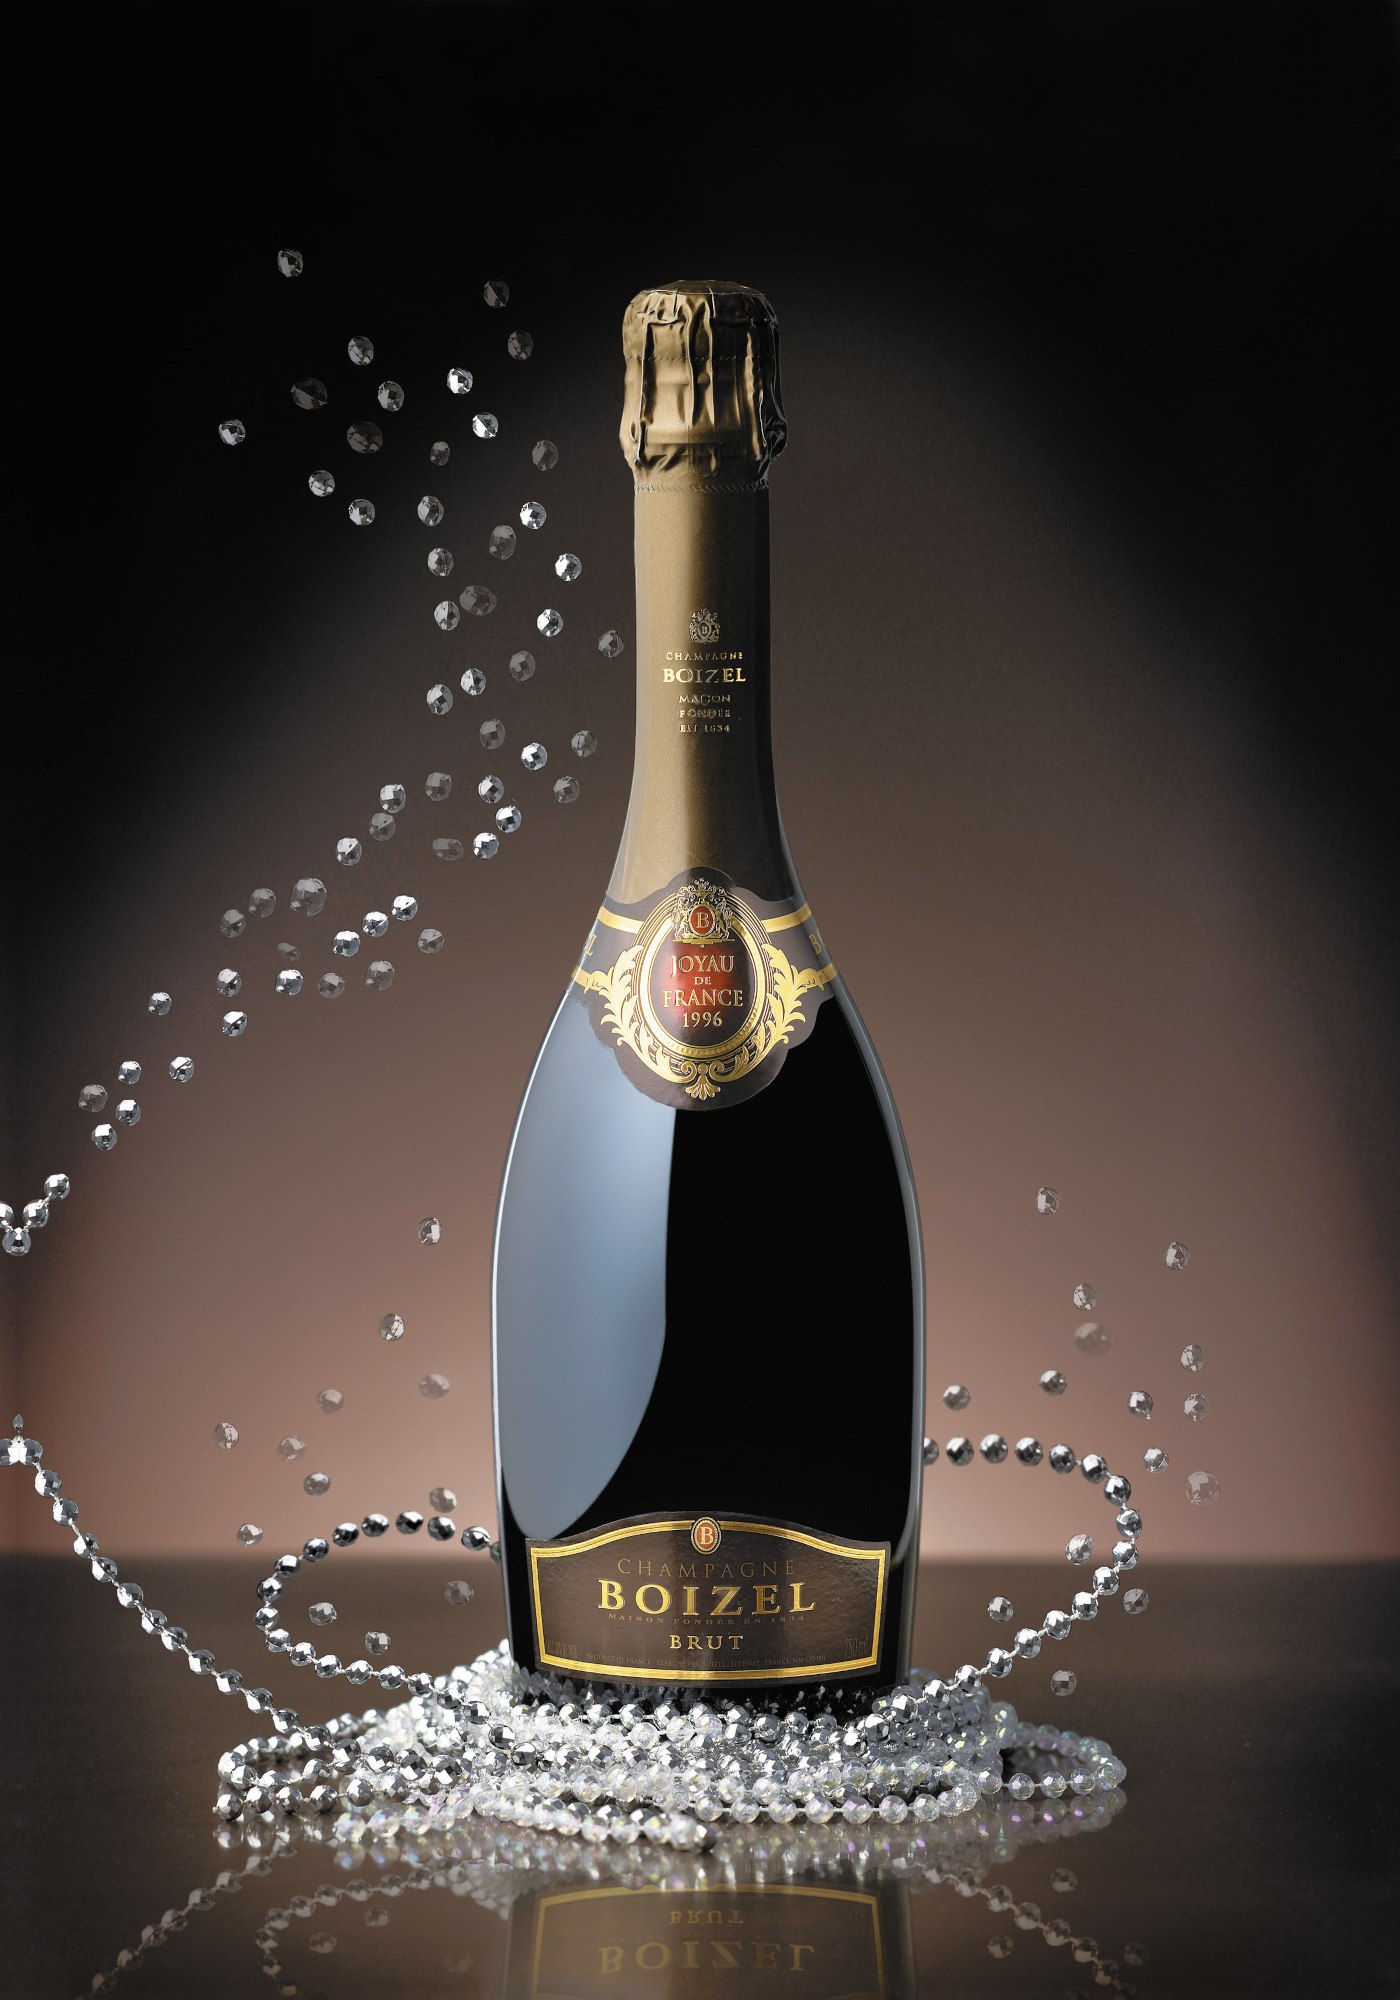 Champagne Boizel - Joyau de France 1996